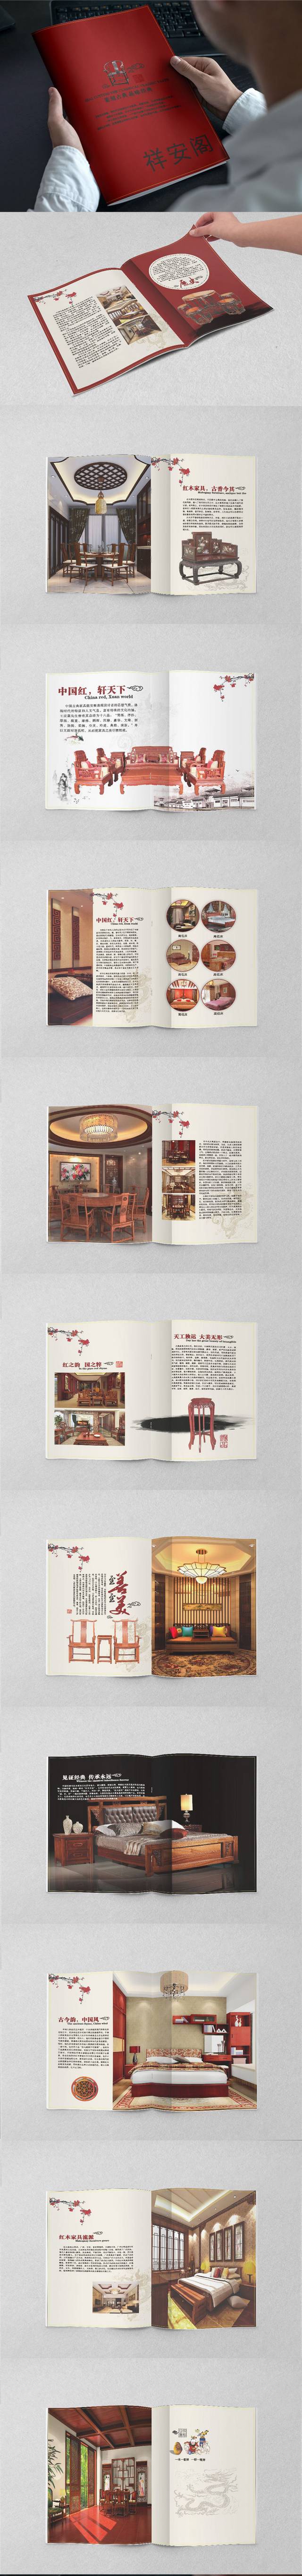 时尚红木家具画册